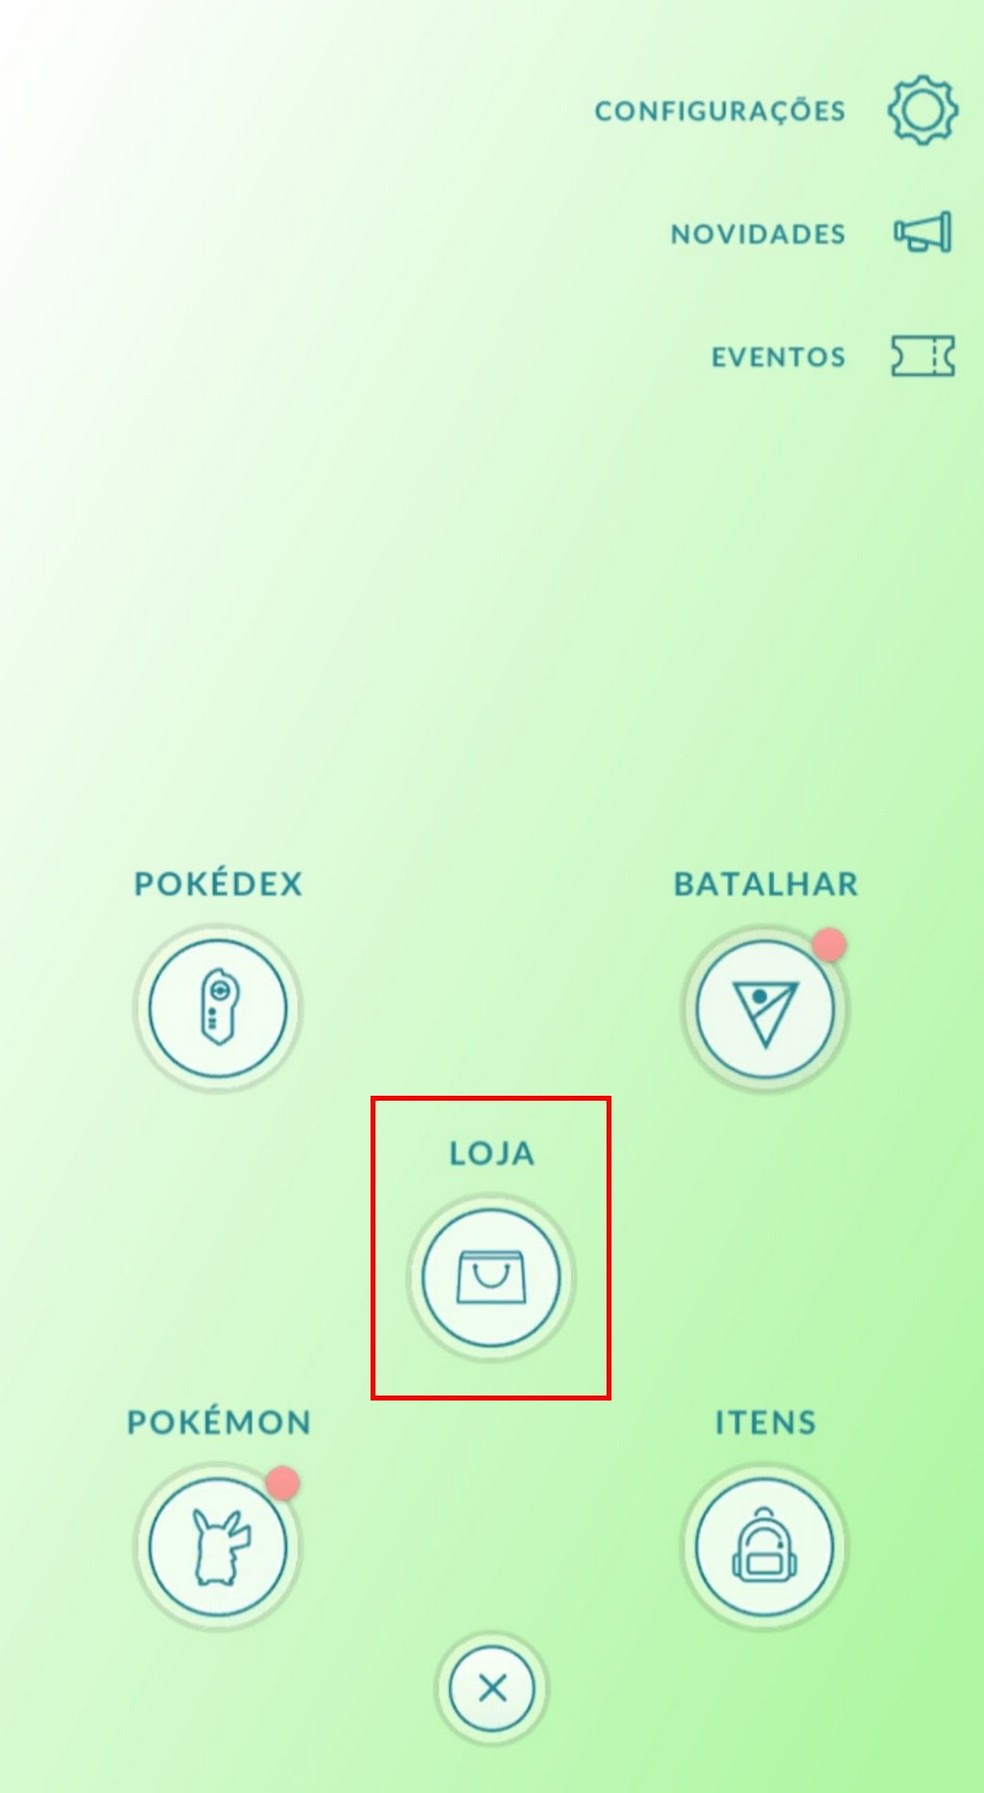 Pokémon GO: Todos os códigos promocionais e como resgatá-los